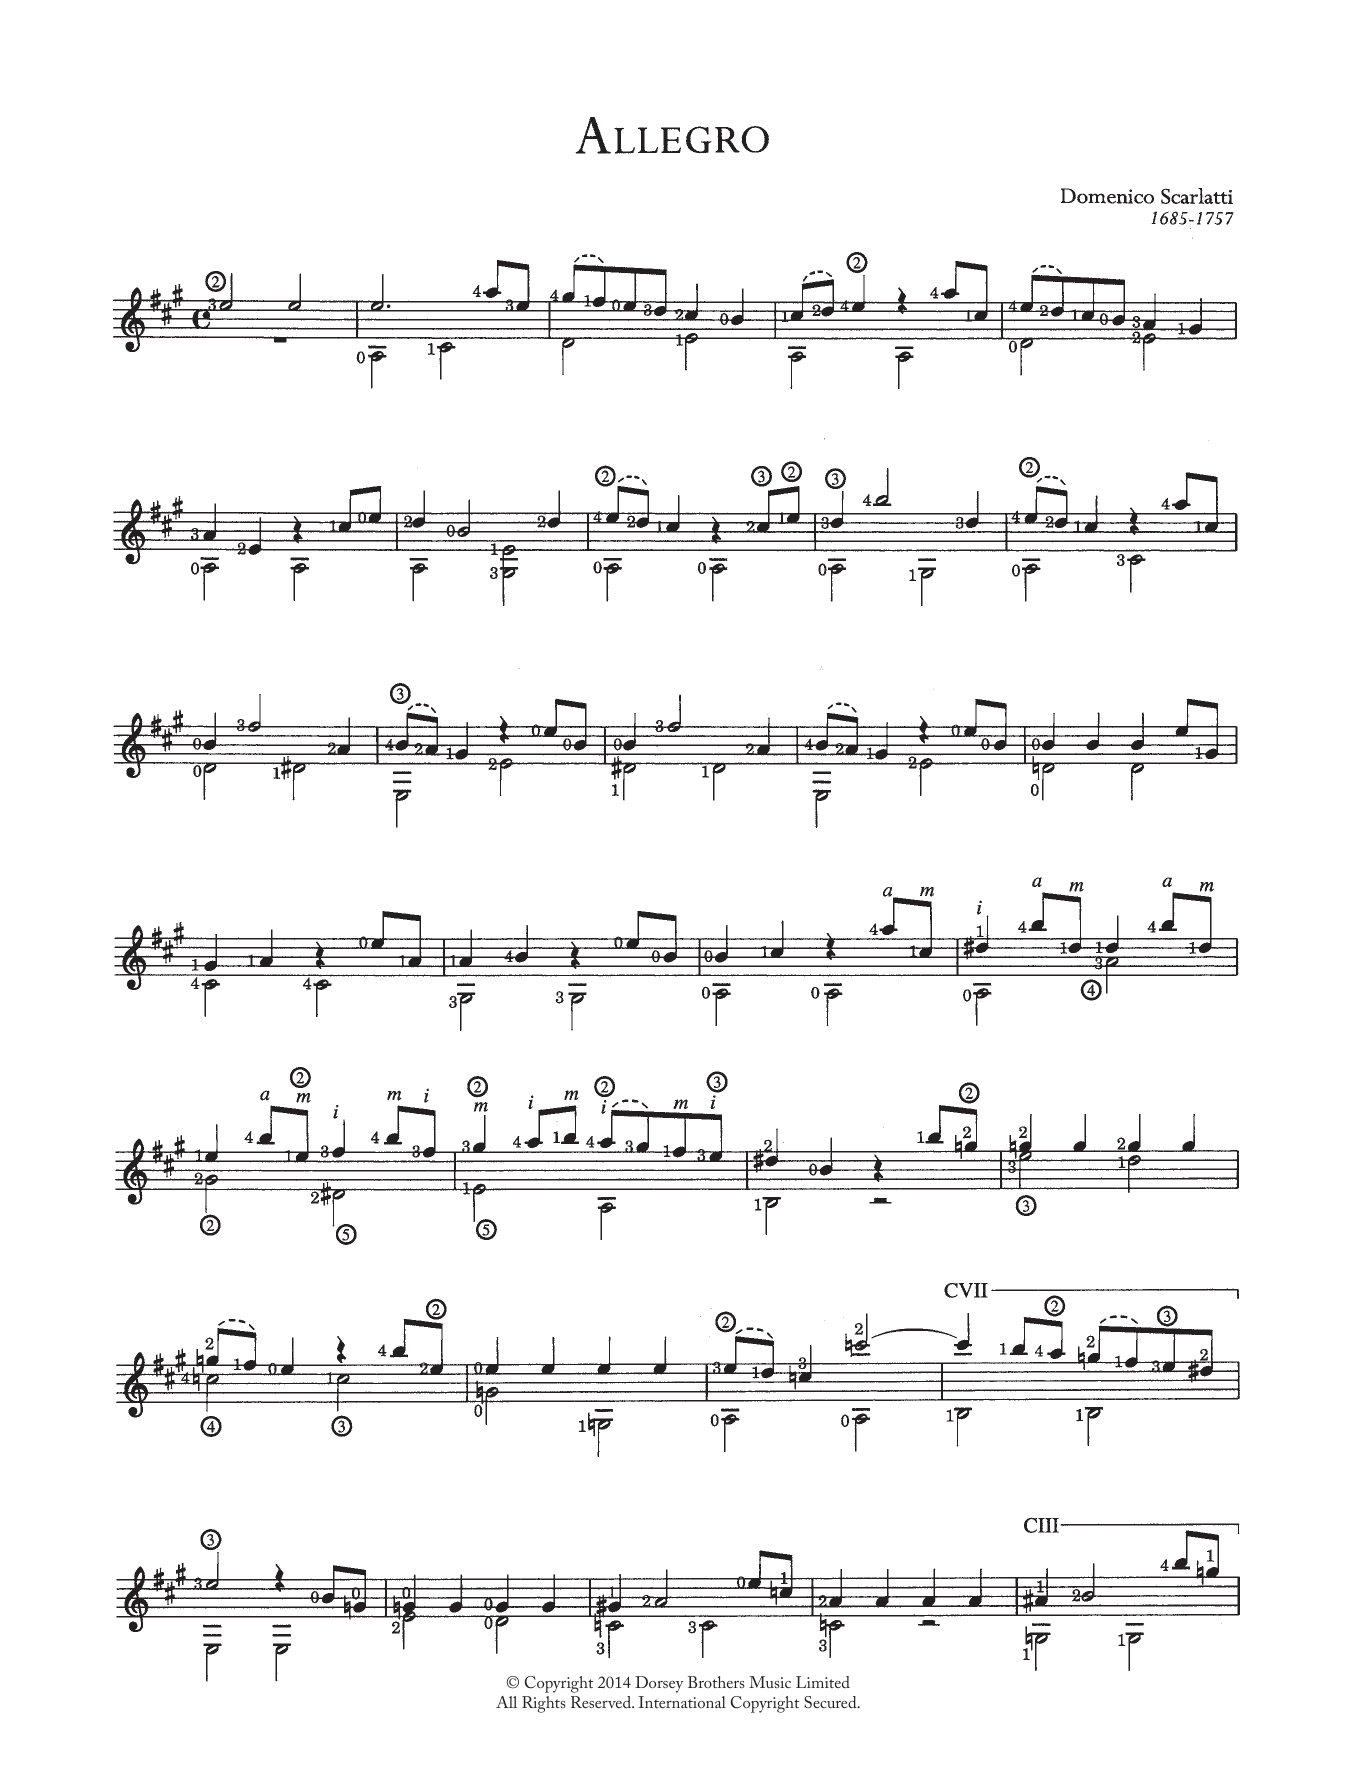 Download Domenico Scarlatti Allegro Sheet Music